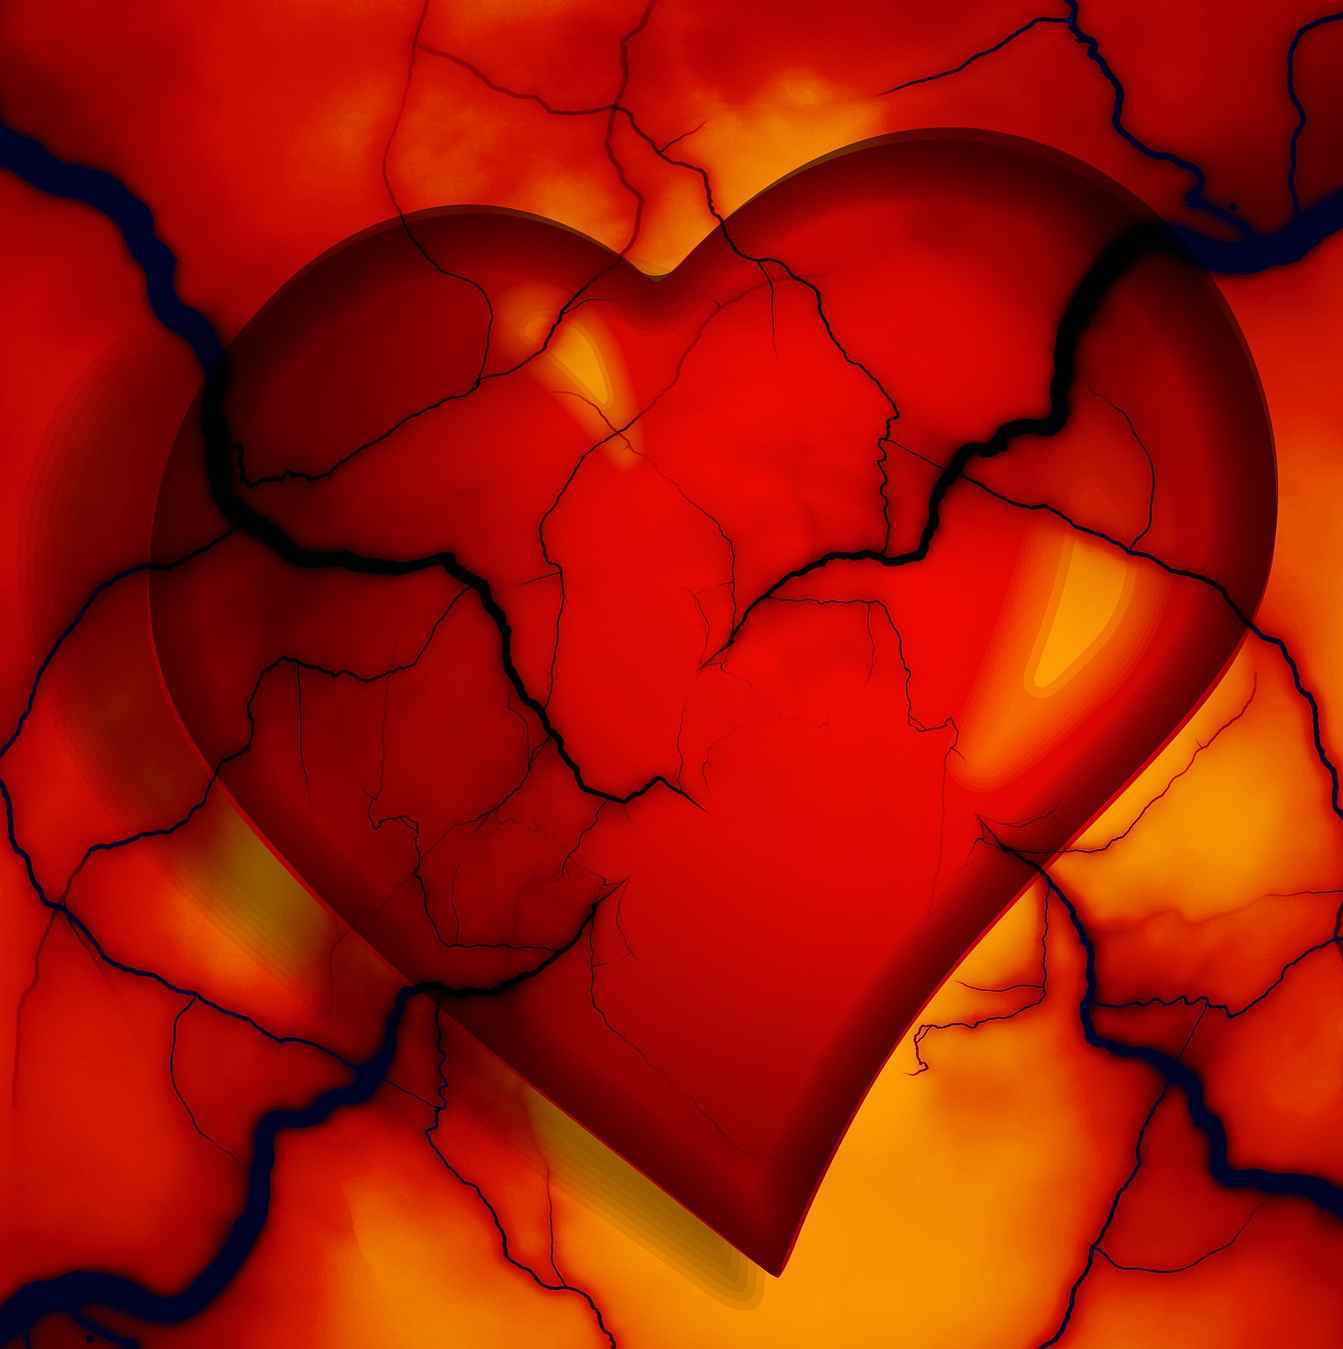 Bilirubina poate  i mbunătăţi sănătatea cardiovasculară: STUDIU